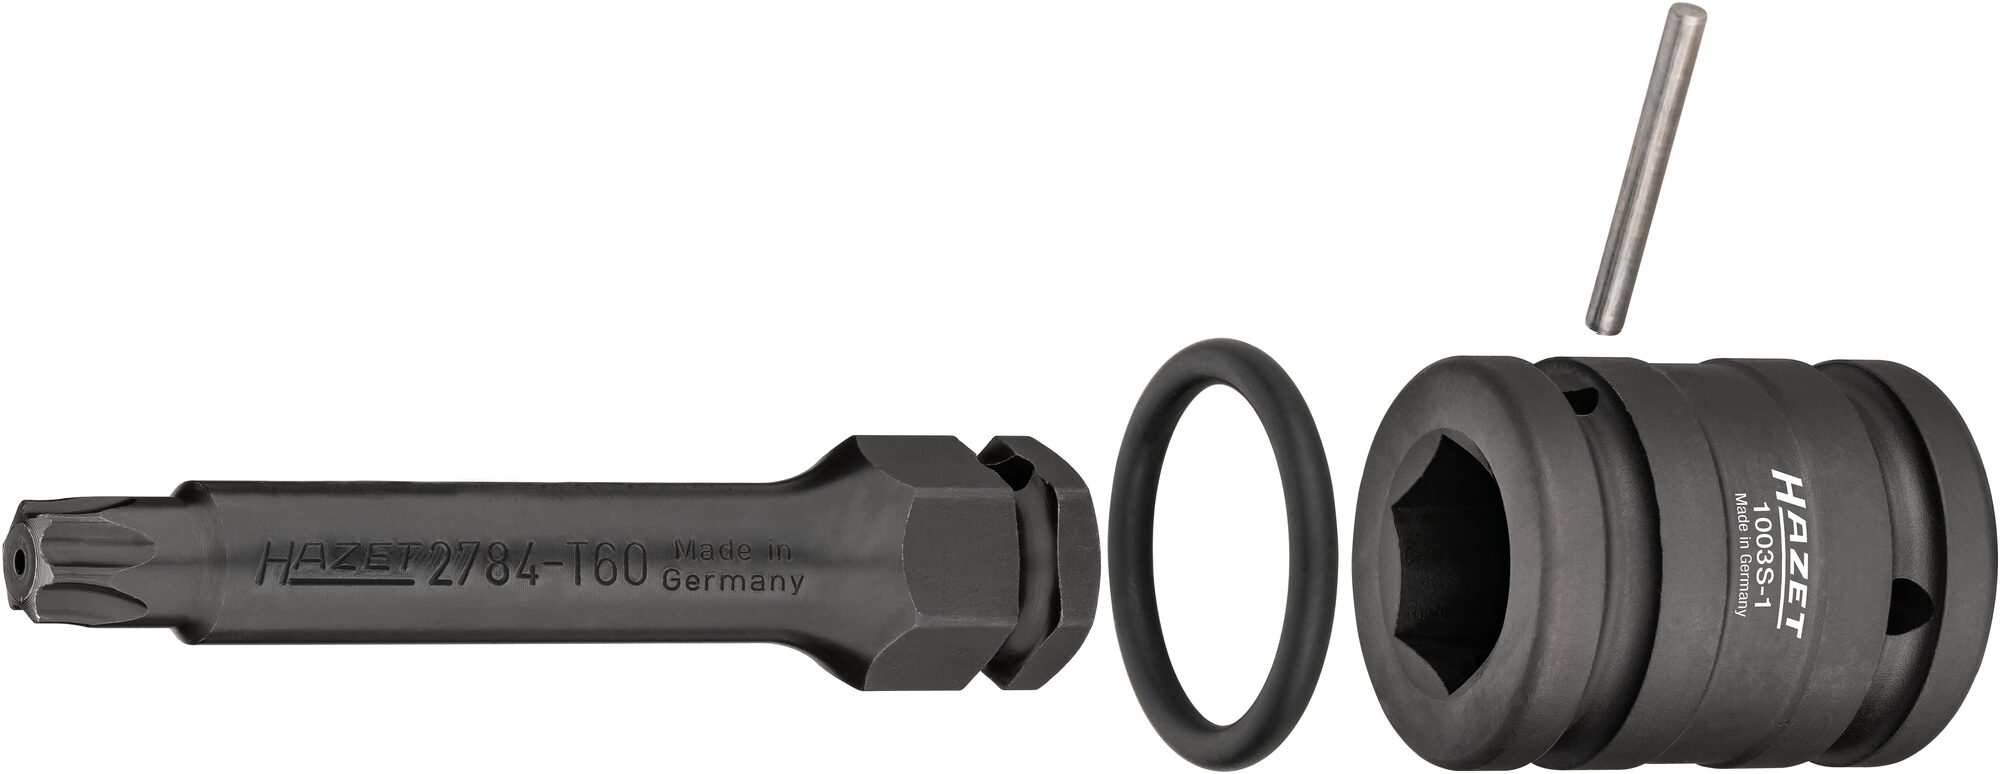 HAZET Schlag-, Maschinenschrauber Adapter 1003S-1 · Vierkant hohl 20 mm (3/4 Zoll) · Innen Sechskant Profil